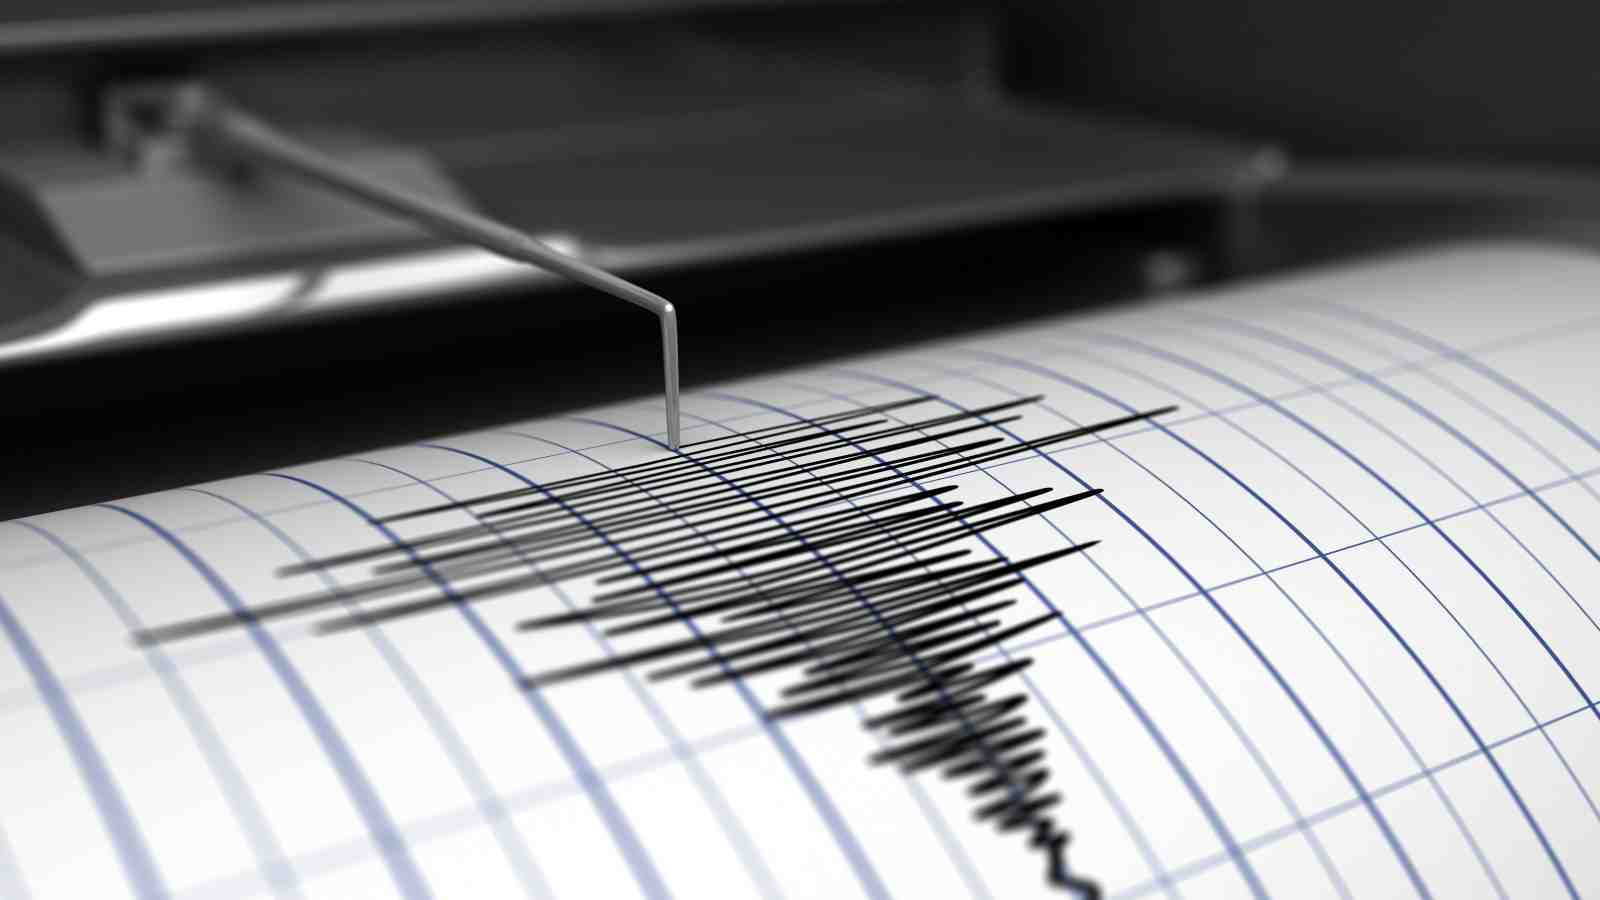 Ισχυρός σεισμός 5,3 Ρίχτερ στον Κορινθιακό Κόλπο – Εγινε αισθητός στην Αθήνα – Λέκκας: «Η περιοχή θέλει προσοχή»